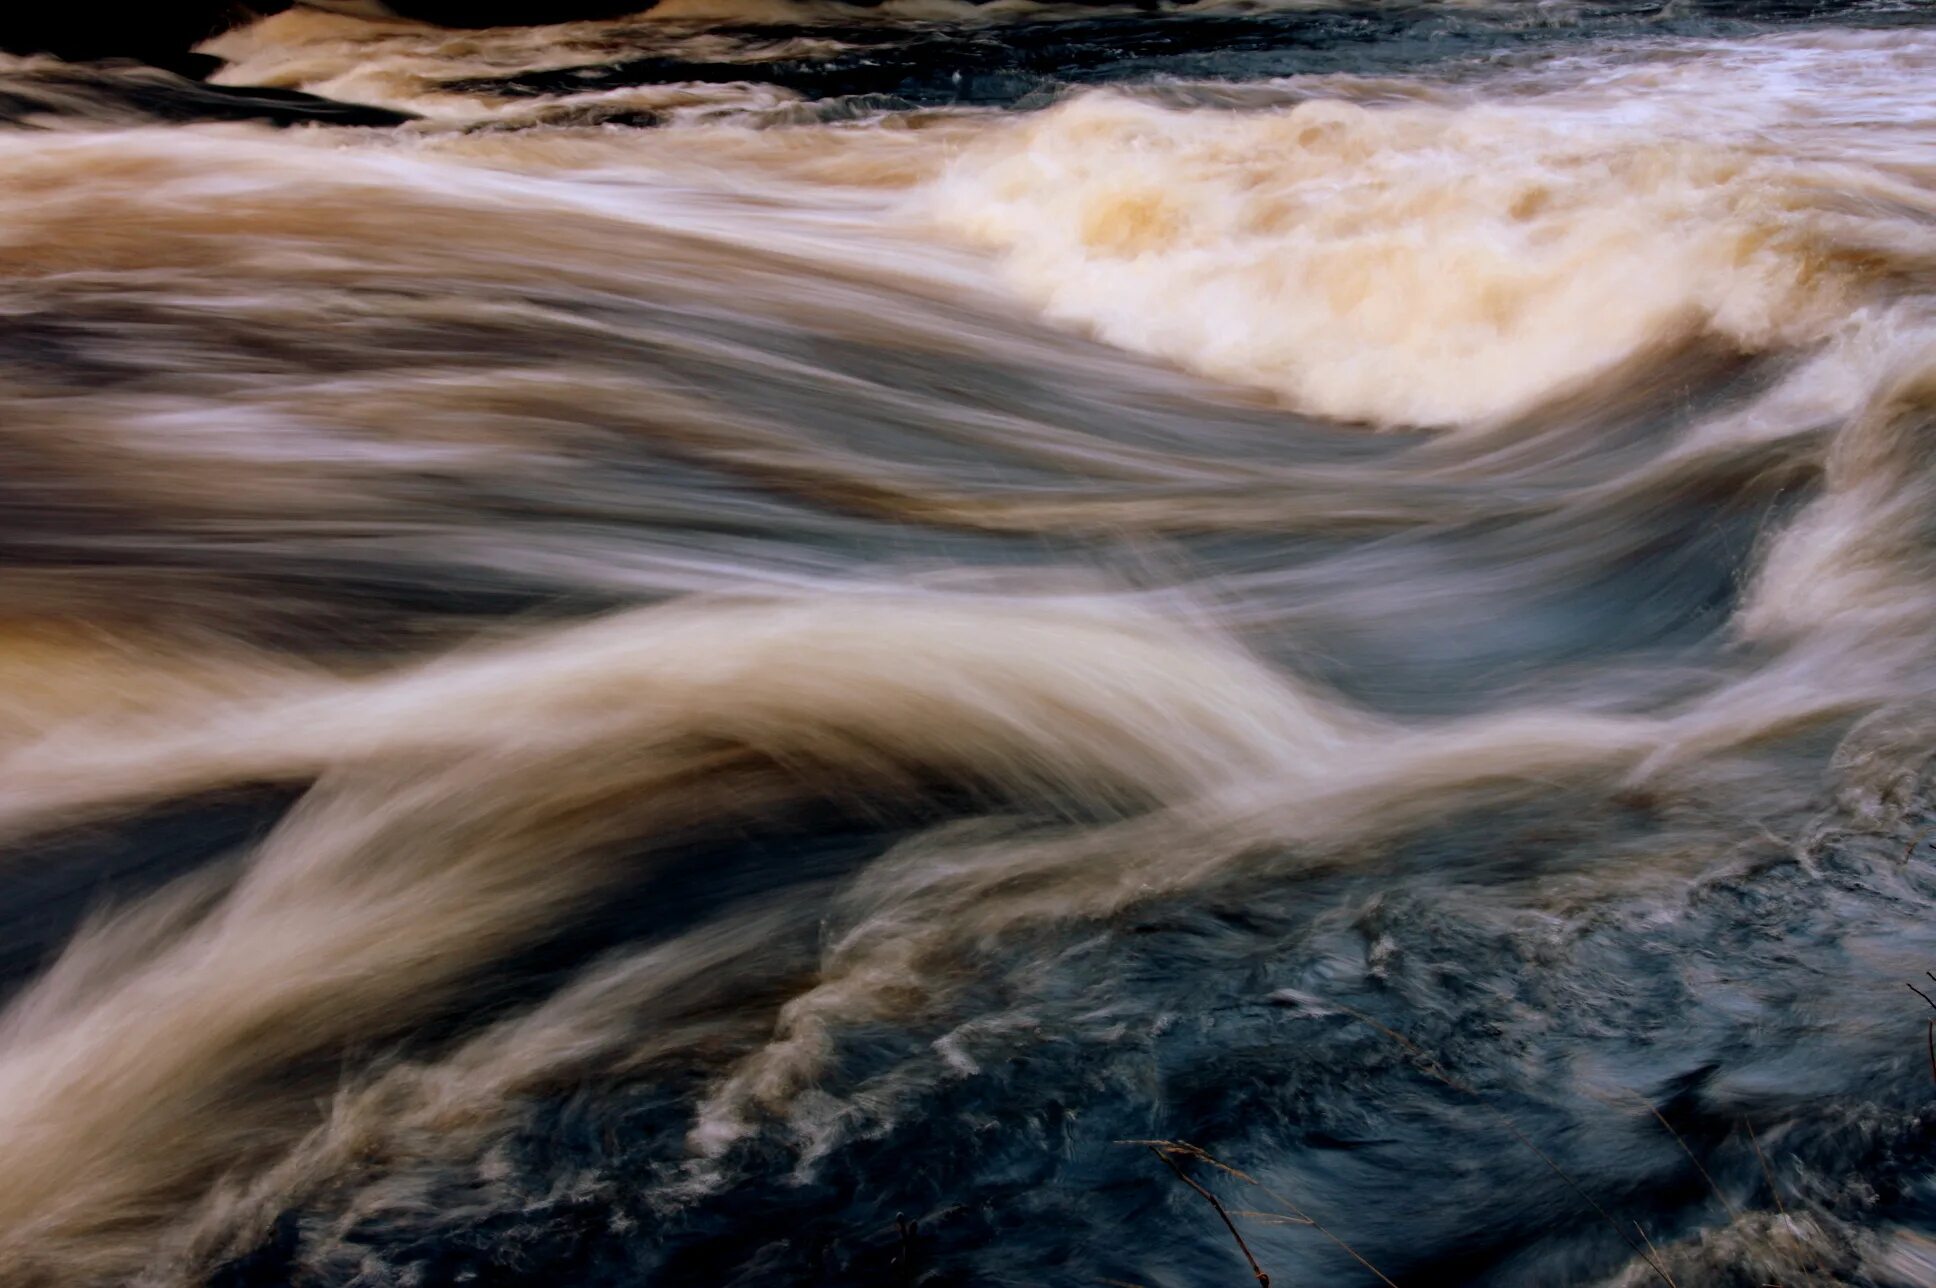 Силен вода. Поток воды. Движение реки. Ручей (Водный поток). Движение потоков воды.